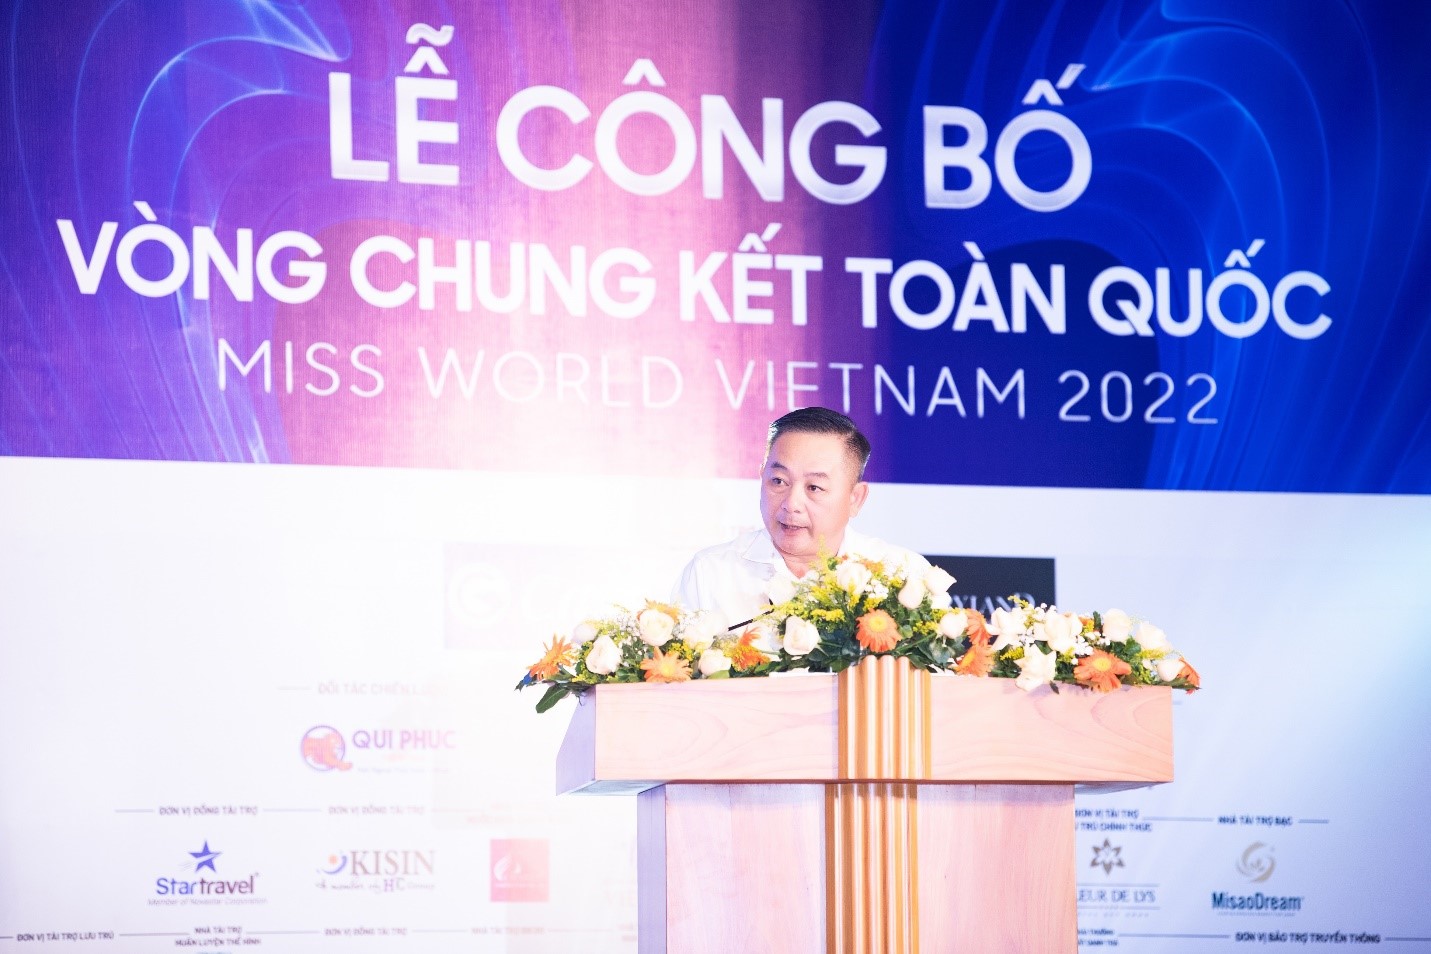 Ông Nguyễn Hữu Sang - Đại diện Tập đoàn Hưng Thịnh phát biểu tại lễ công bố vòng chung kết.